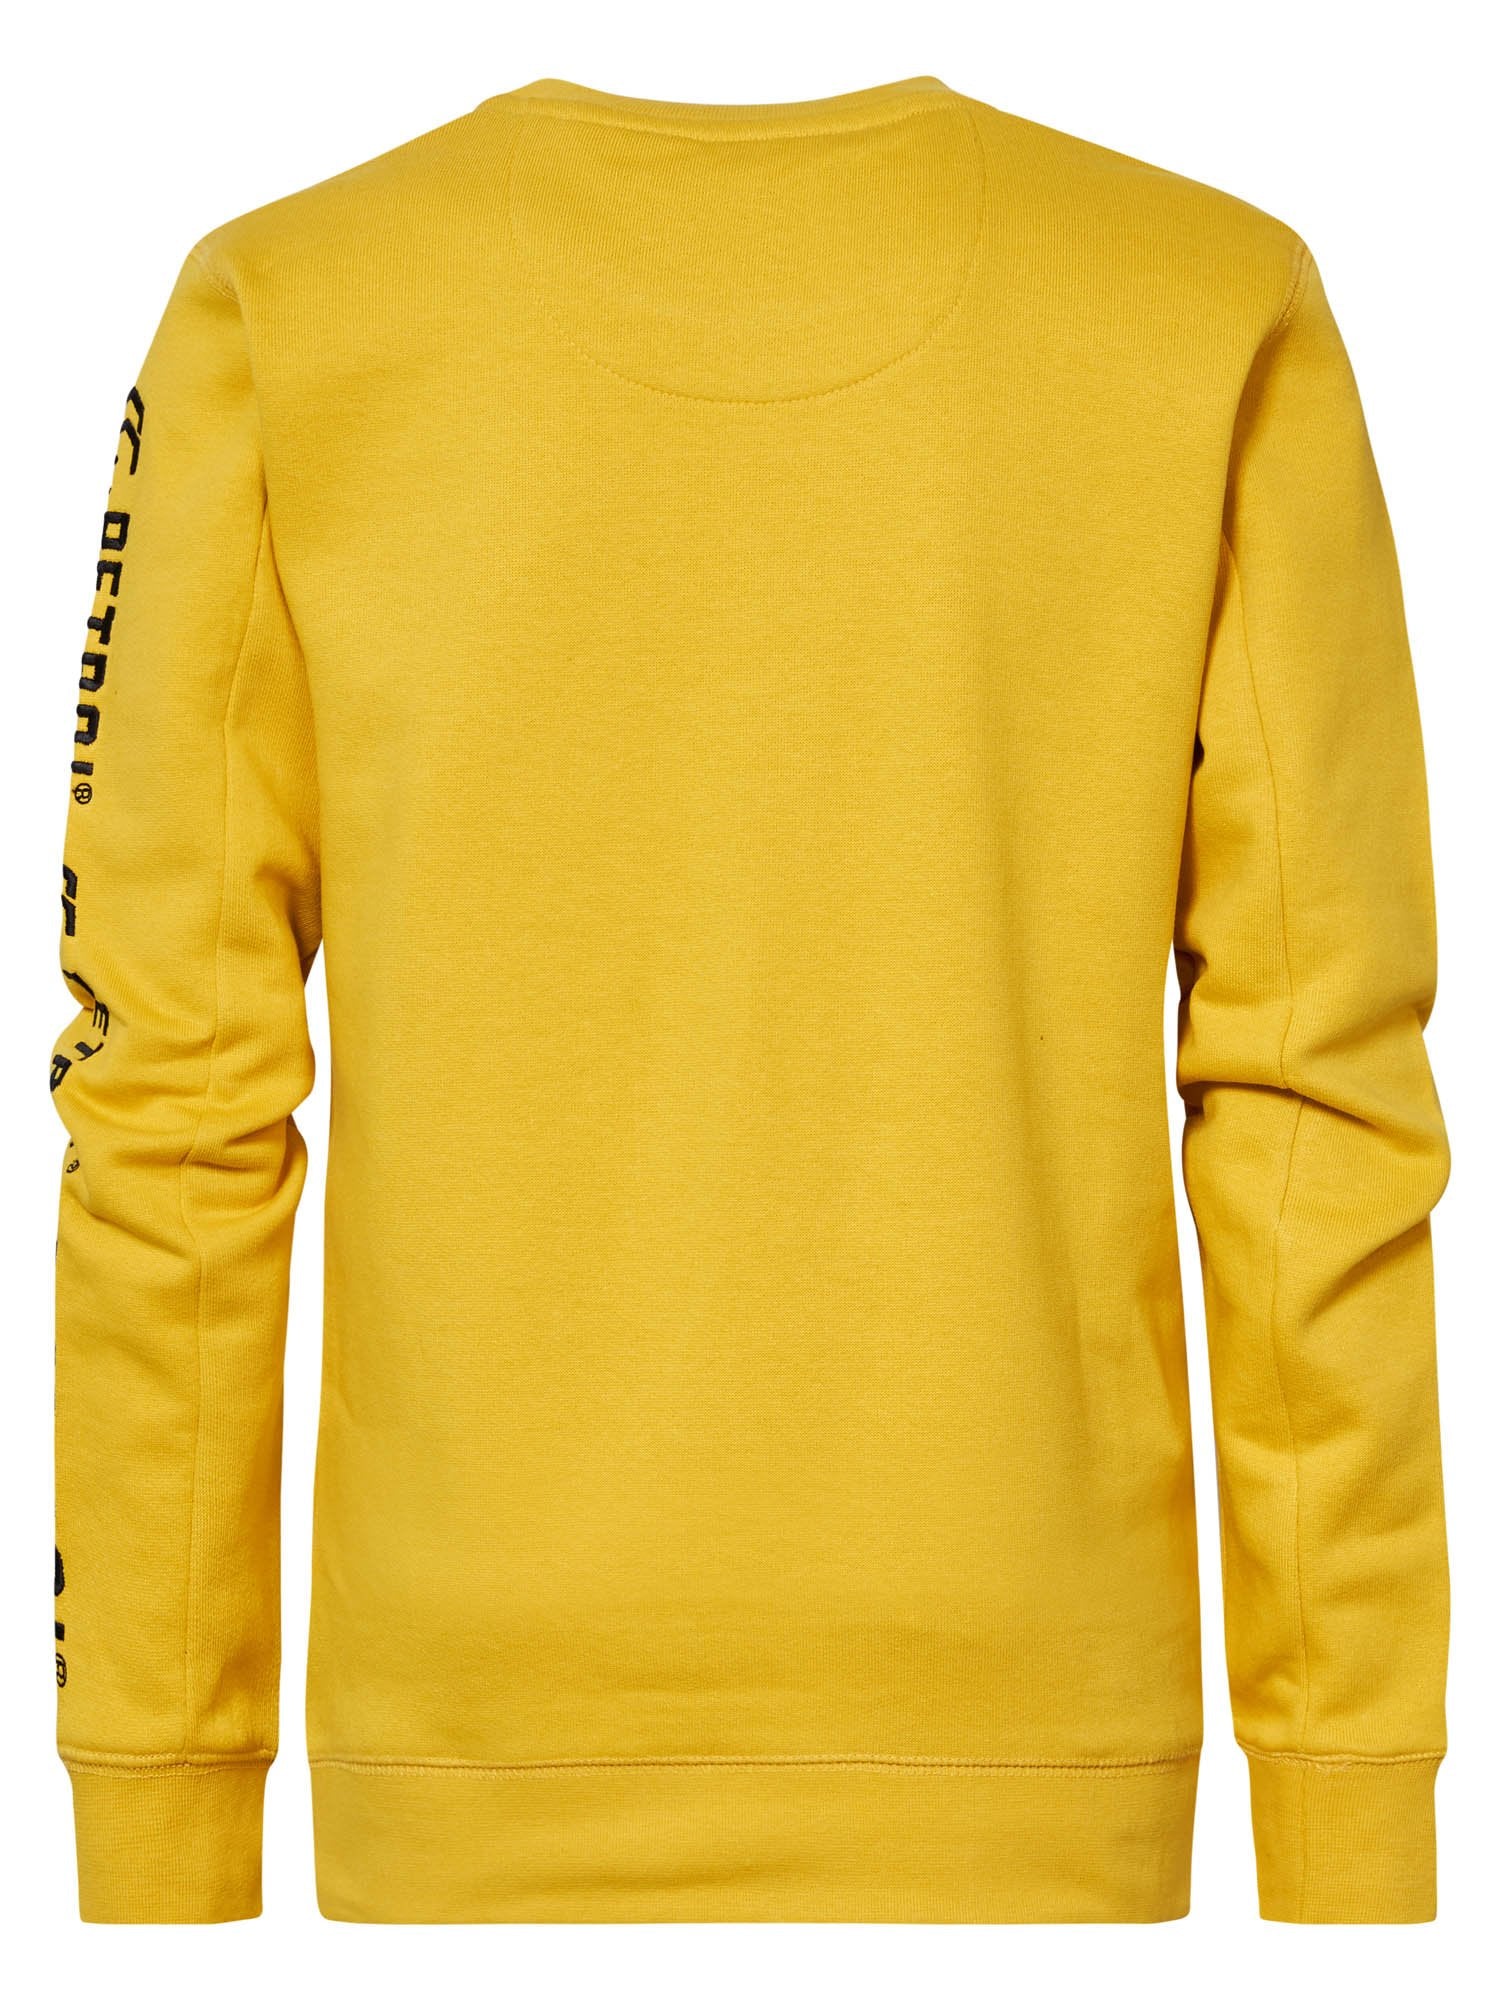 Jongens Sweater Crewneck with Text on Sleeve van Petrol in de kleur Antique Yellow in maat 164.